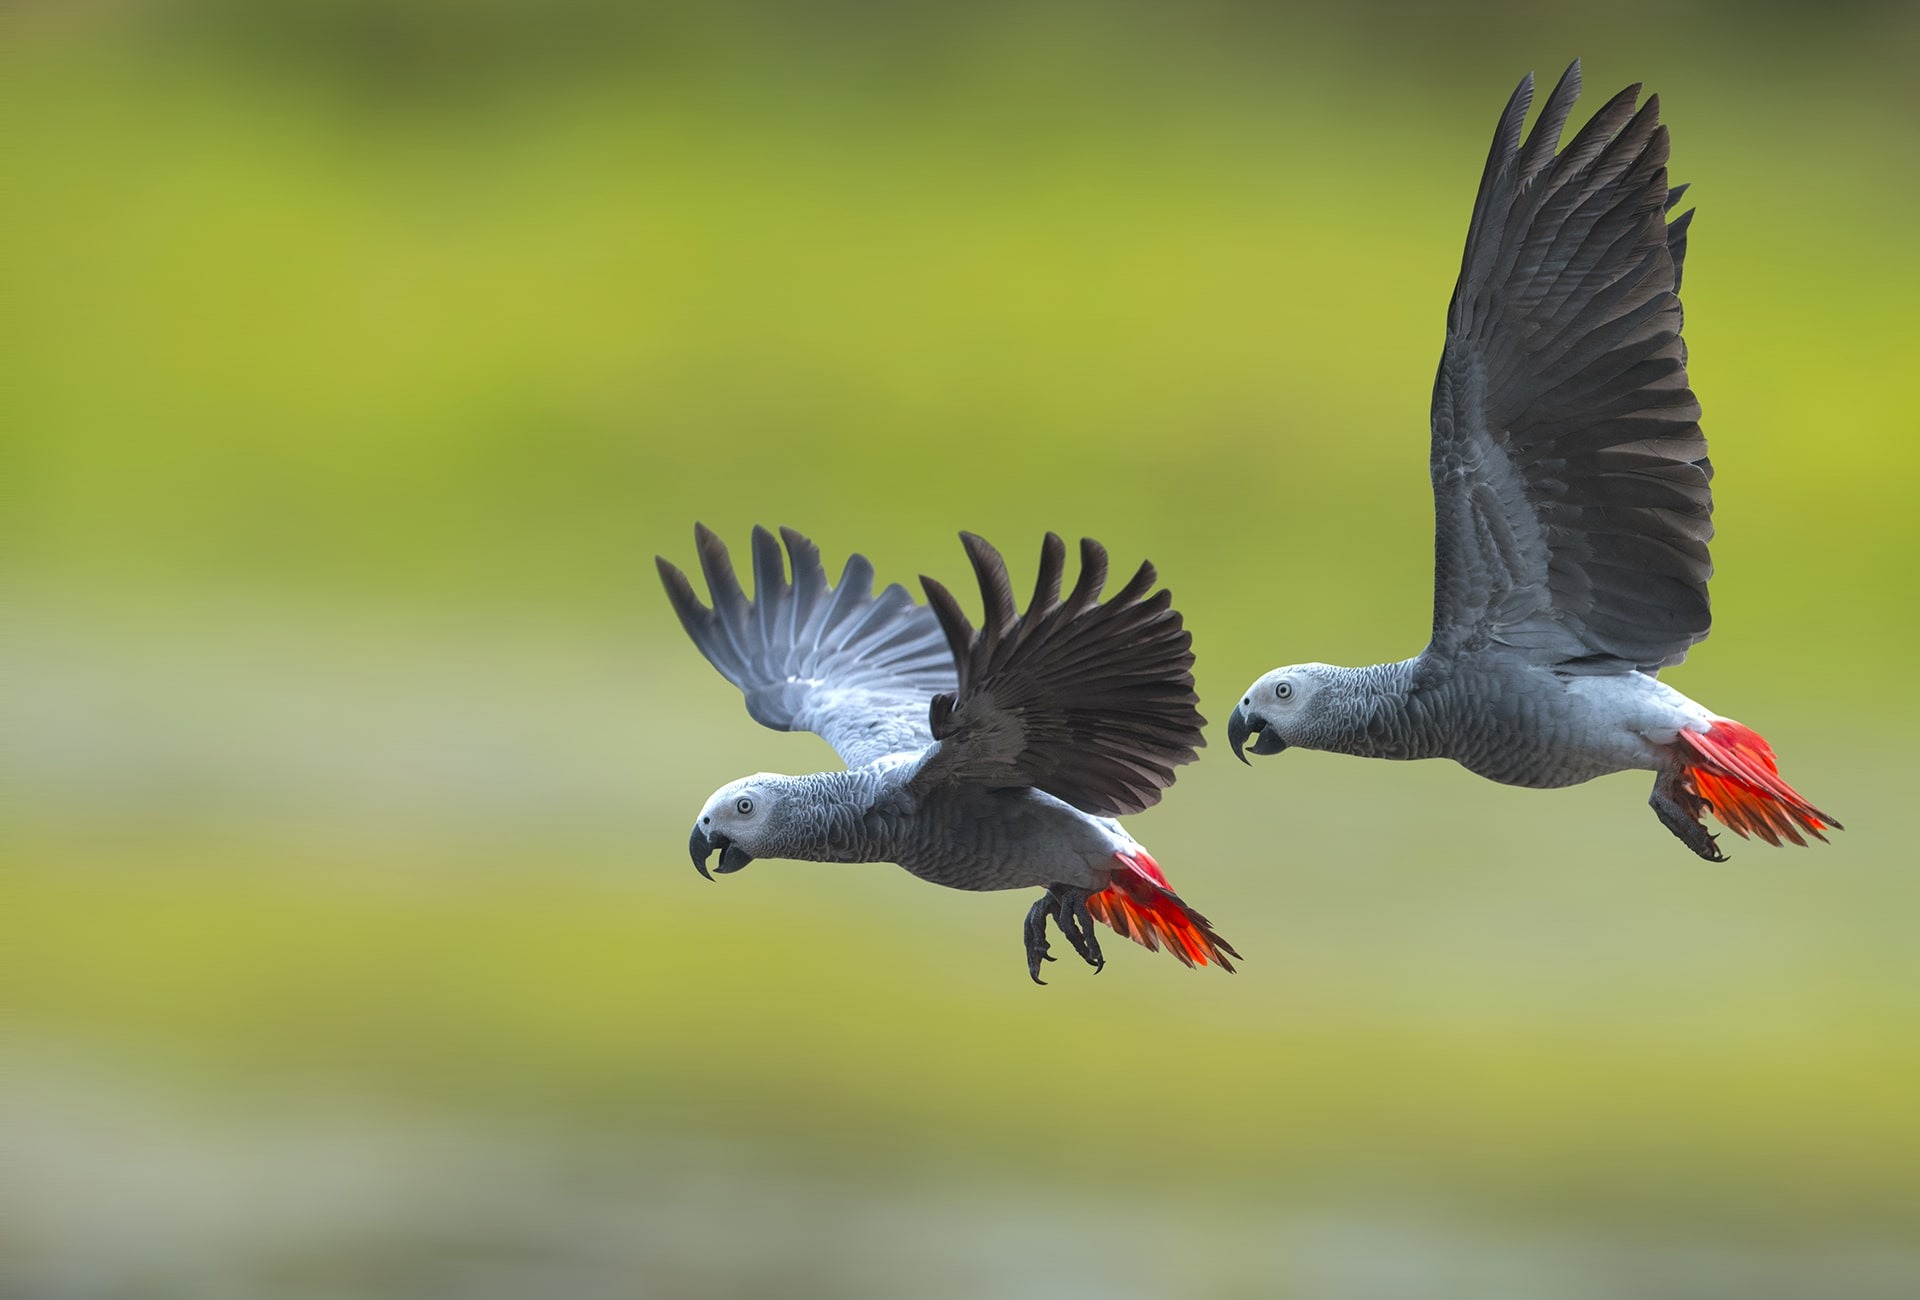 Endangered African Grey Parrots, by Superstjern